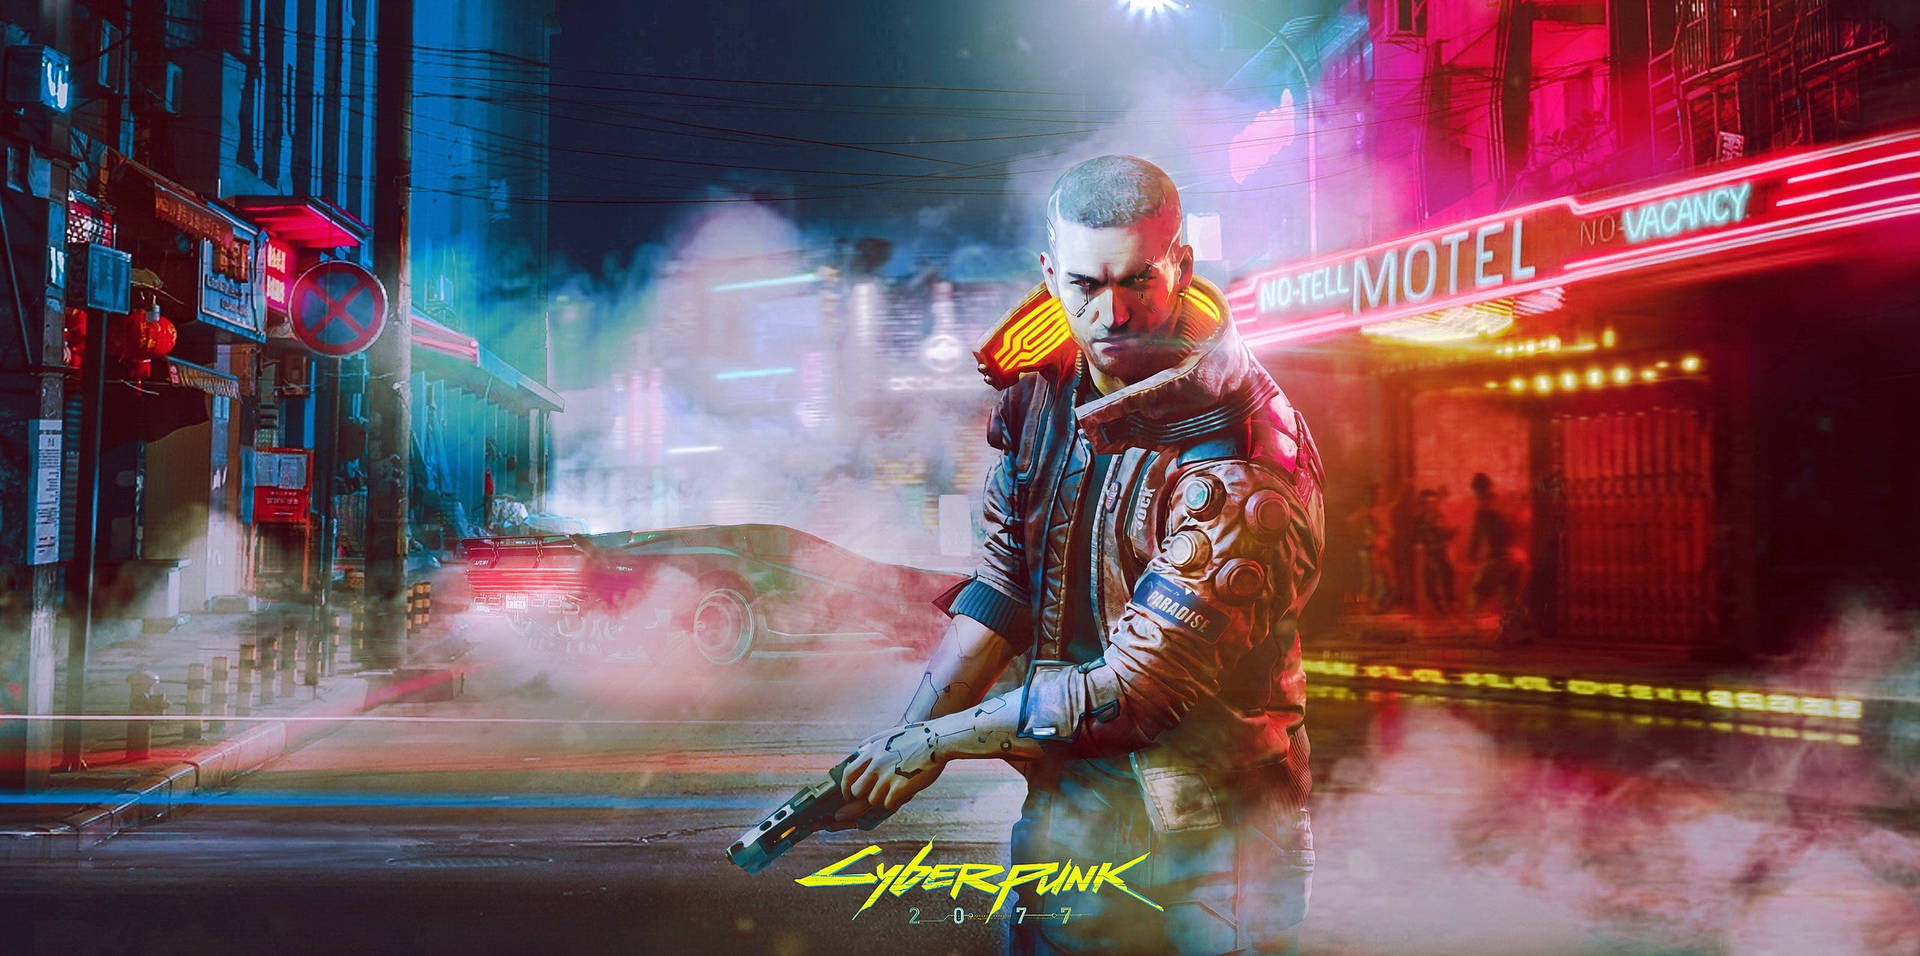 Ultrawide Cyberpunk Bald Man With Gun Wallpaper